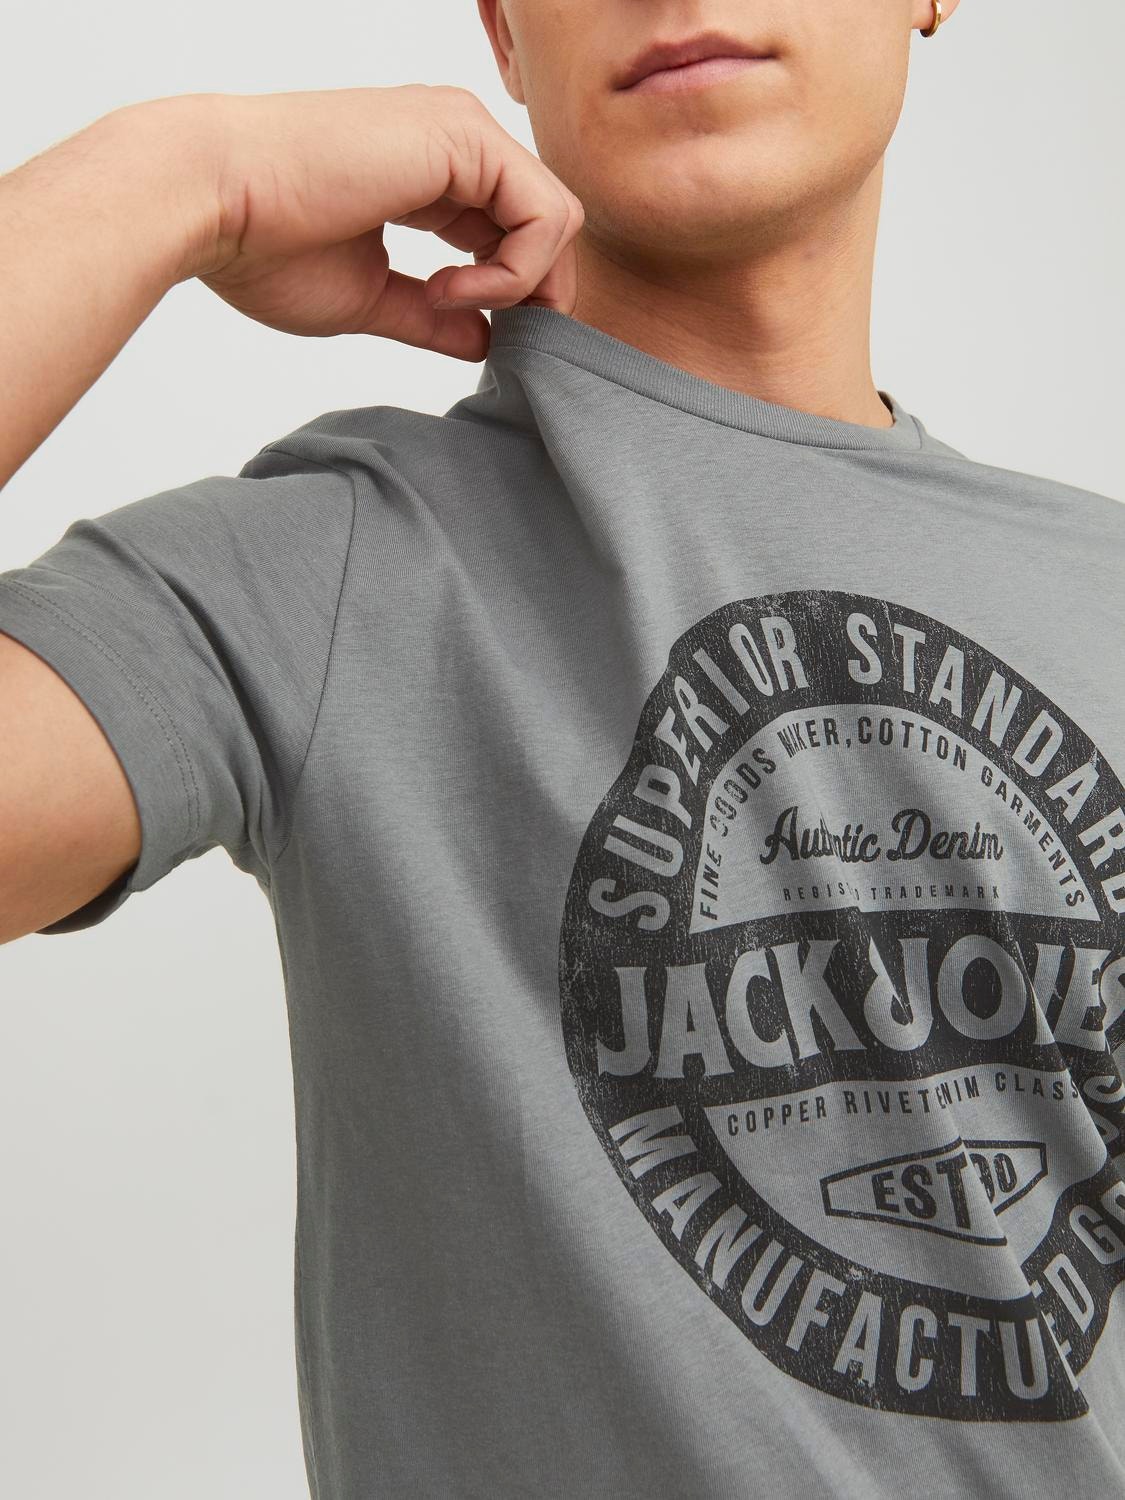 Jack & Jones Logo Pyöreä pääntie T-paita -Sedona Sage - 12232972